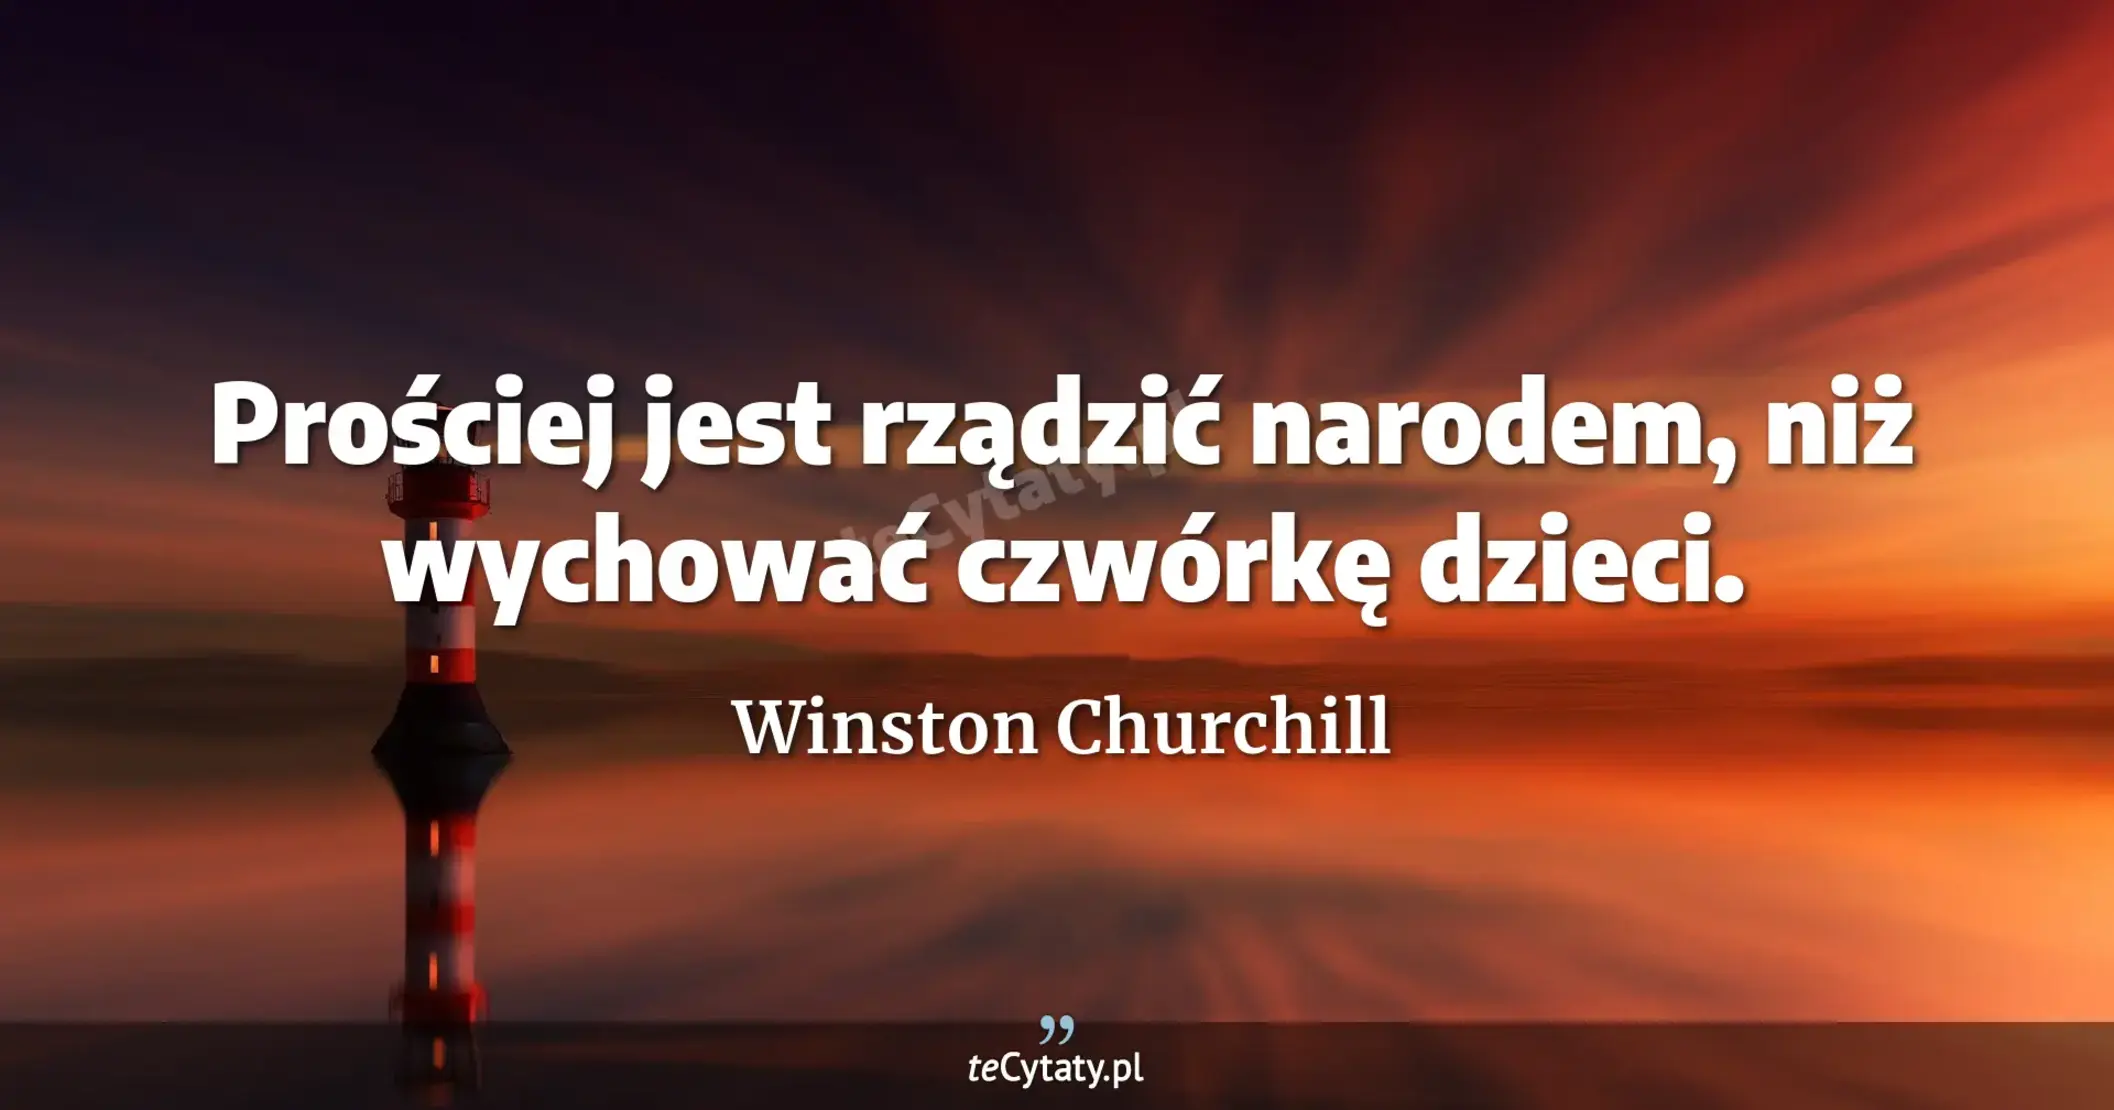 Prościej jest rządzić narodem, niż wychować czwórkę dzieci. - Winston Churchill